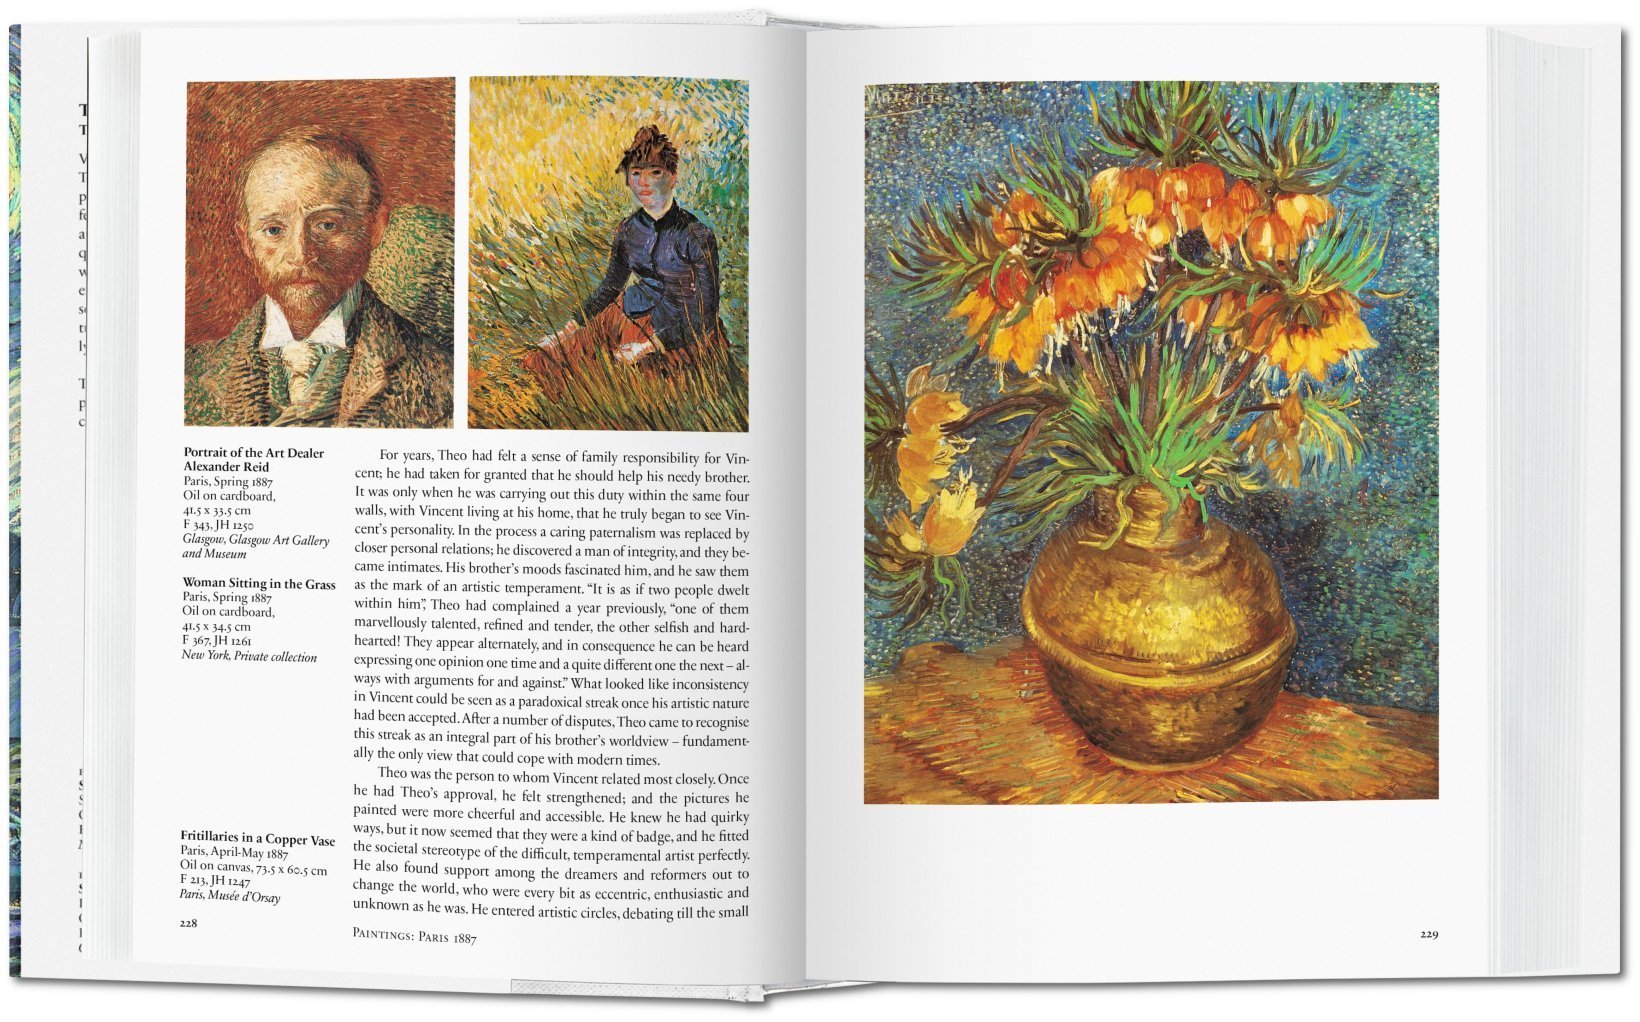 Vincent van Gogh. Sämtliche Gemälde